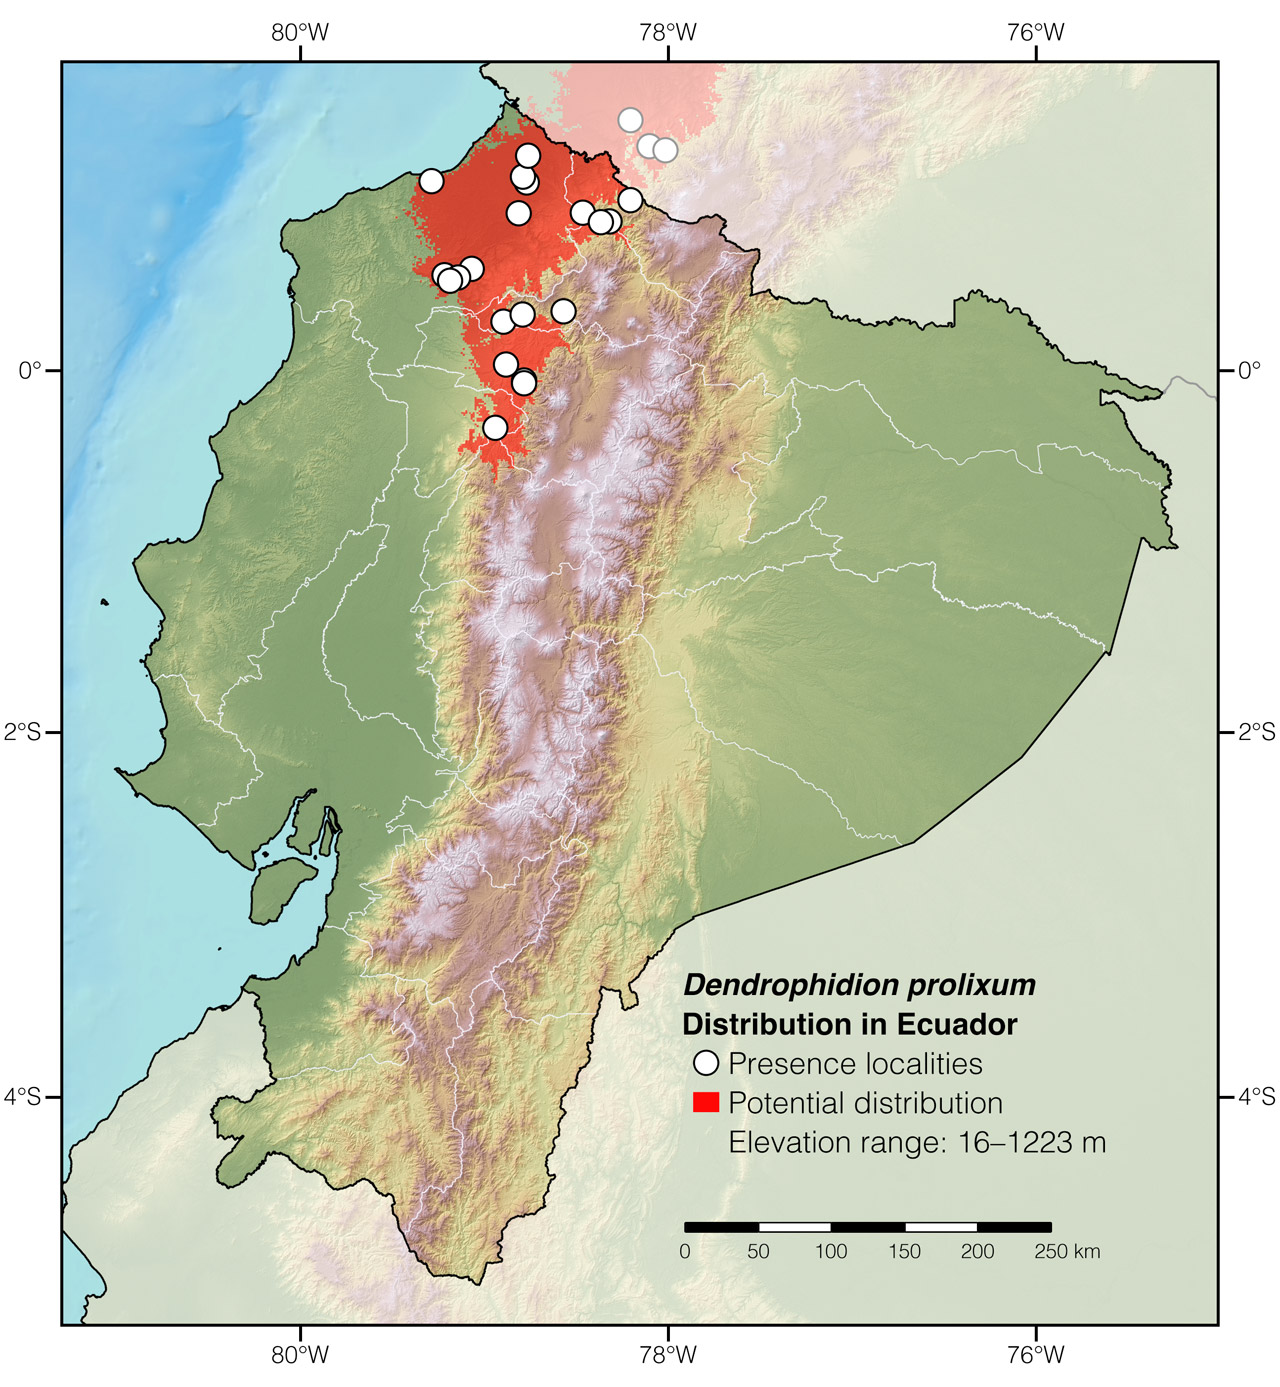 Distribution of Dendrophidion prolixum in Ecuador